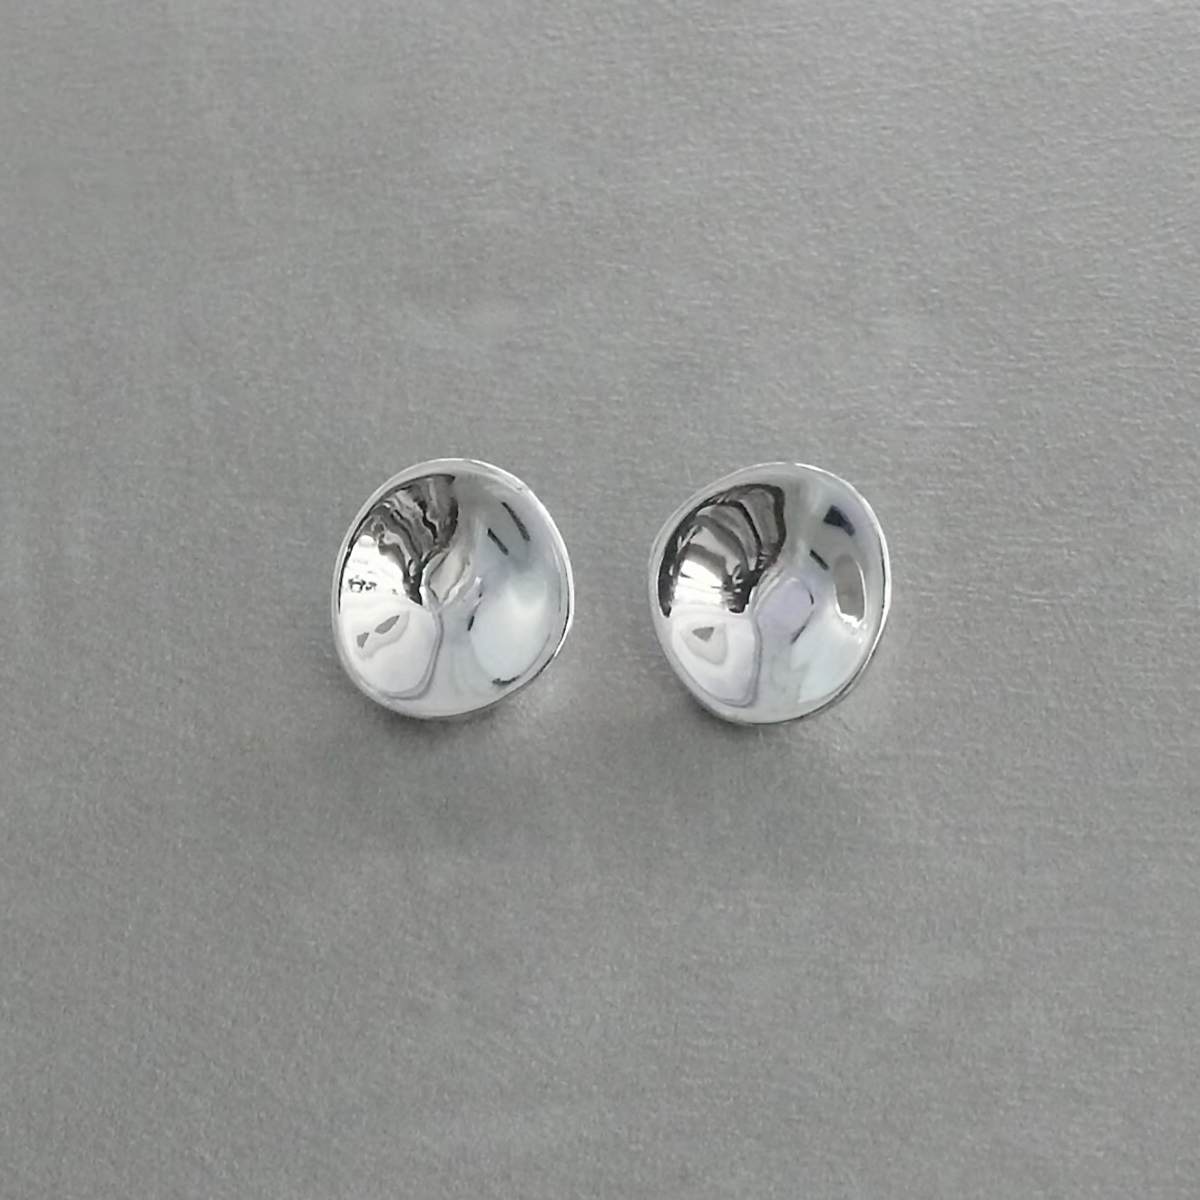 MONICA CASTIGLIONI O-CIOTOLE-02 / Earrings / Silver